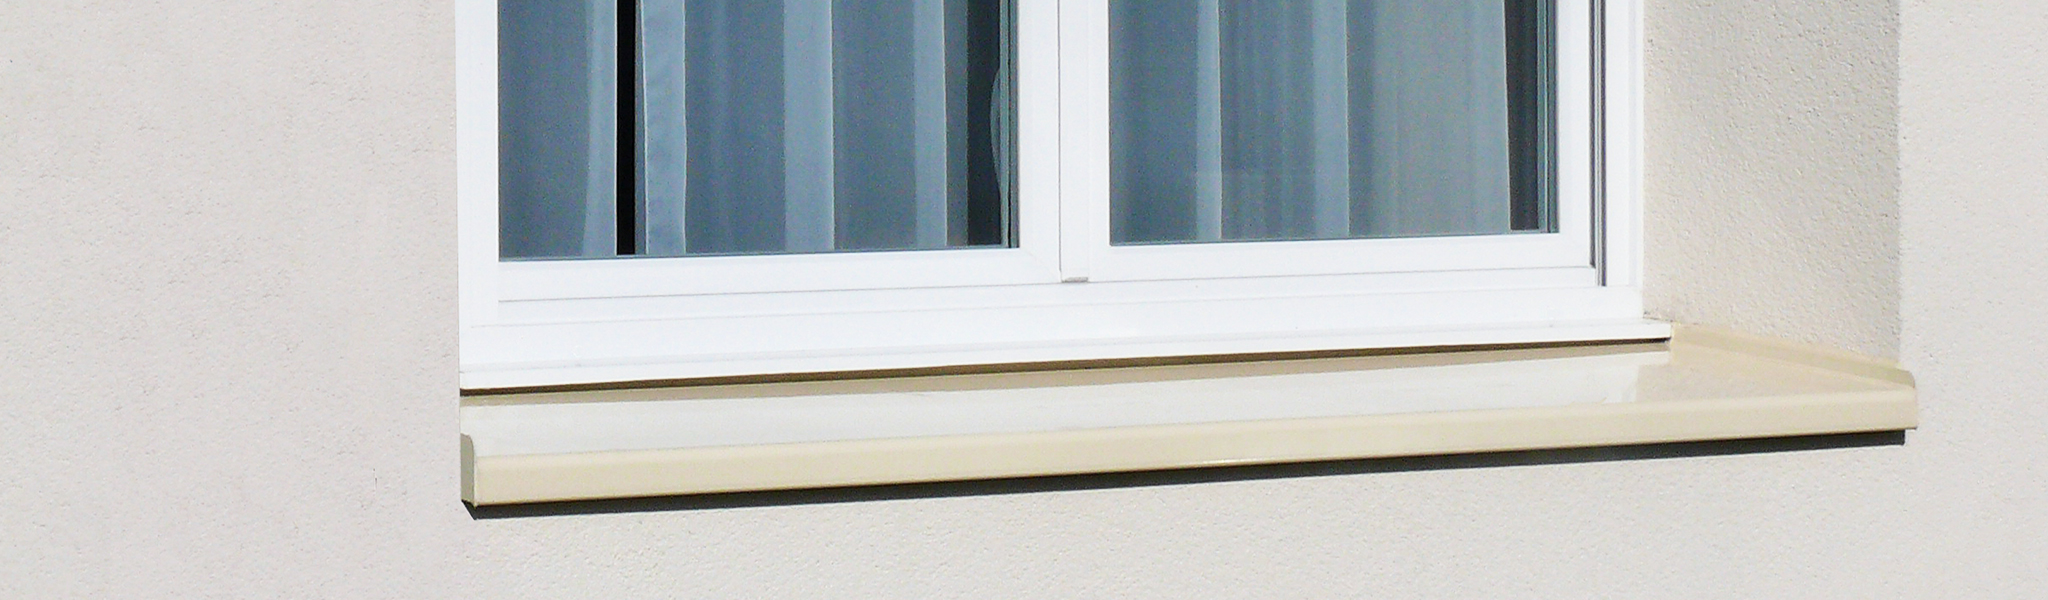 dani alu - Equipements de fenêtre: appui, bavette, protection aluminium